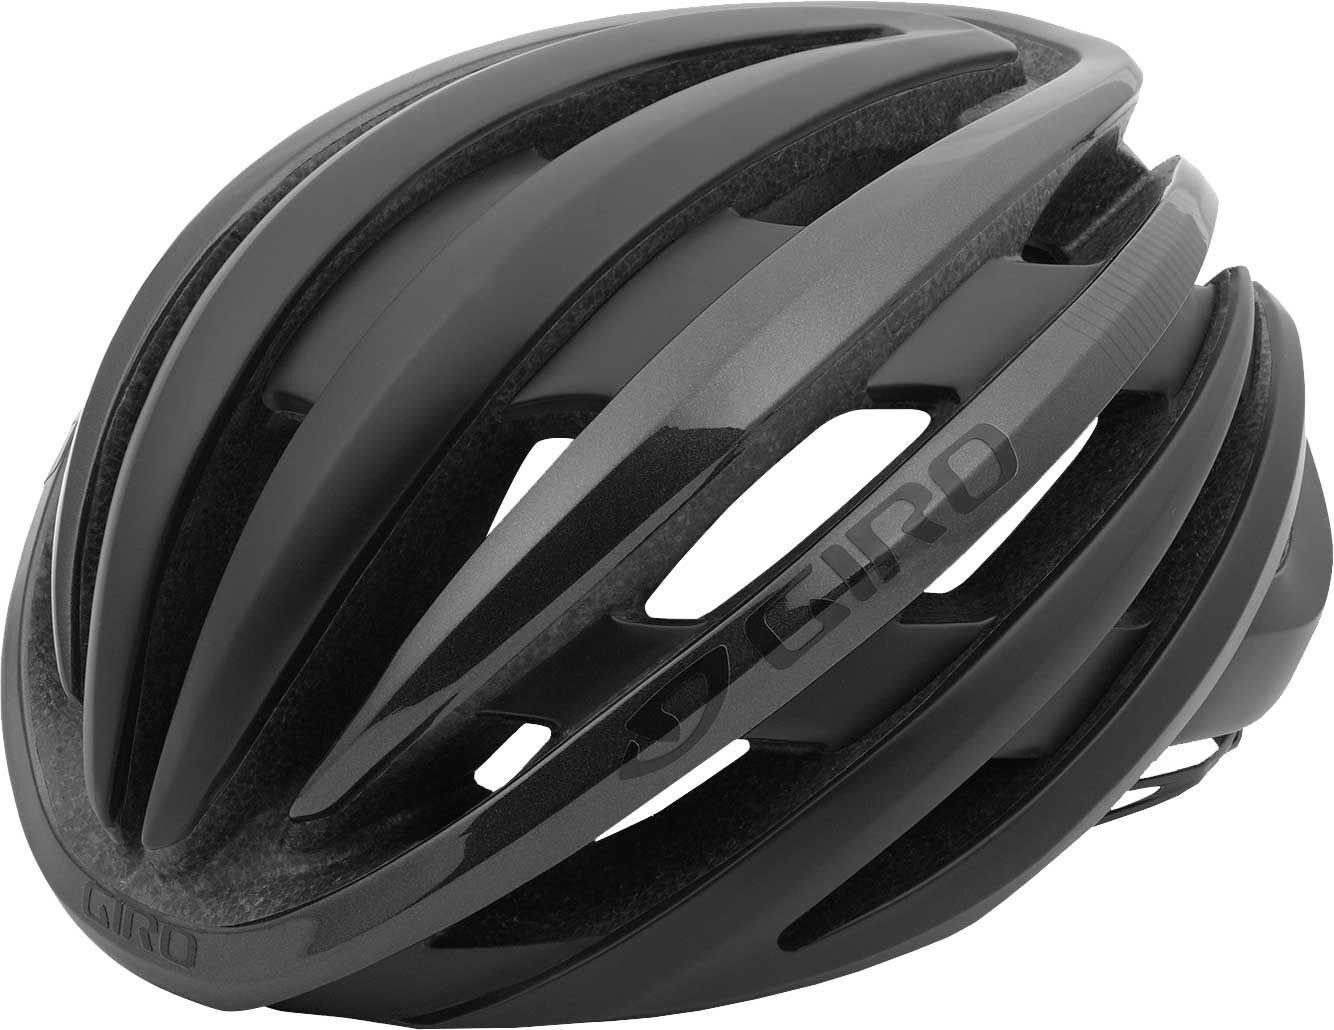 Photos - Motorcycle Helmet Giro Adult Cinder MIPS Bike Helmet, Large, Black 17giracndrmpsxxxxdlt 